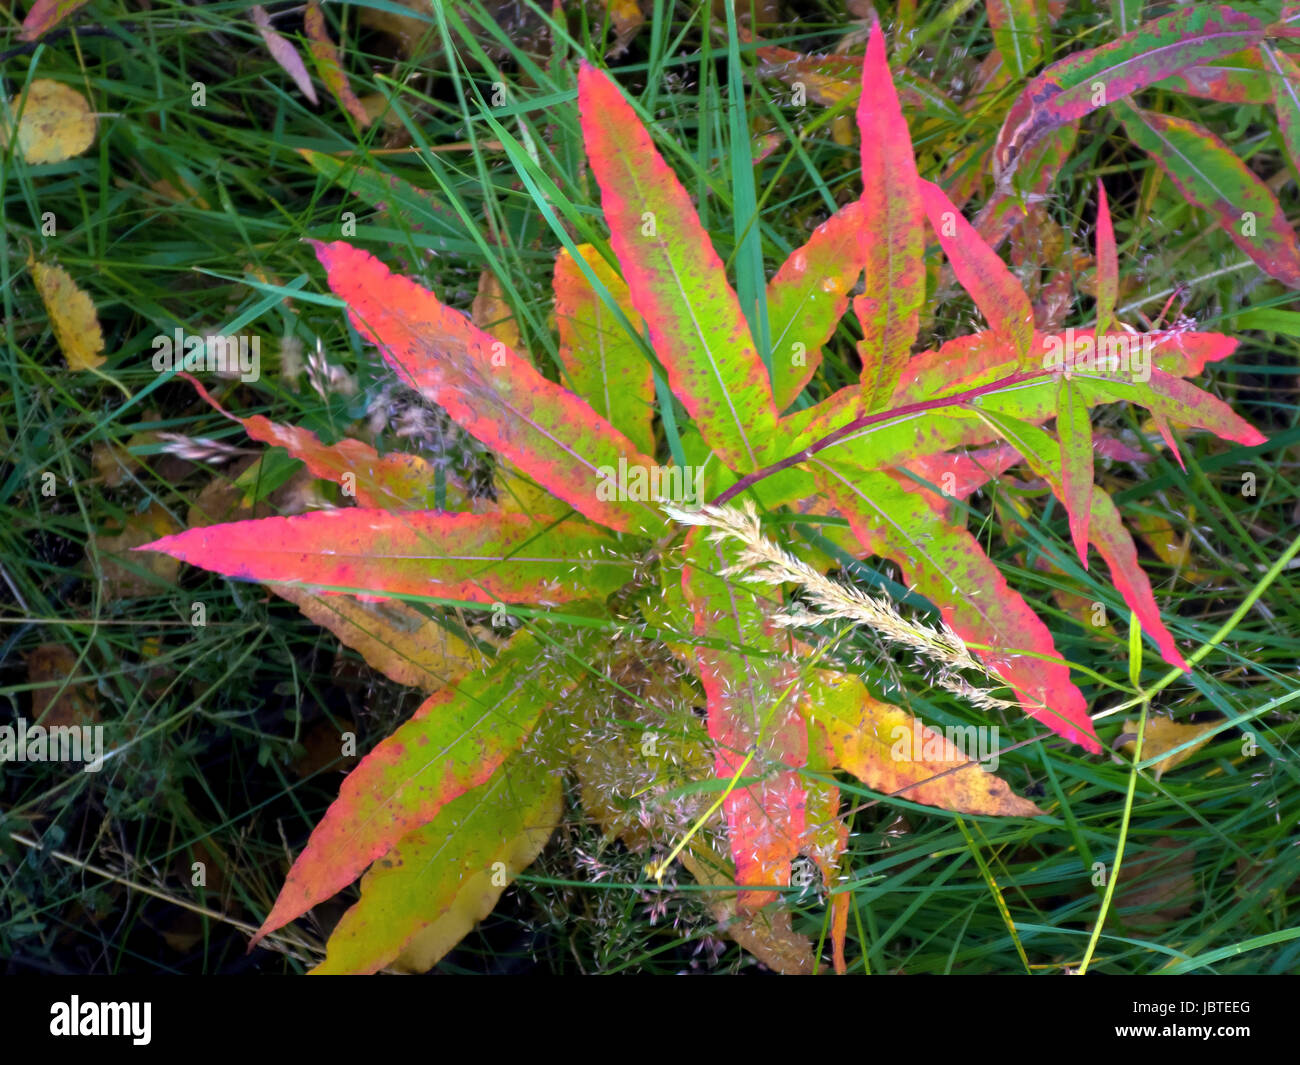 Weidenröschen im Herbst, Epilobium sp. / Willow-Herb in autumn, Epilobium sp. Stock Photo